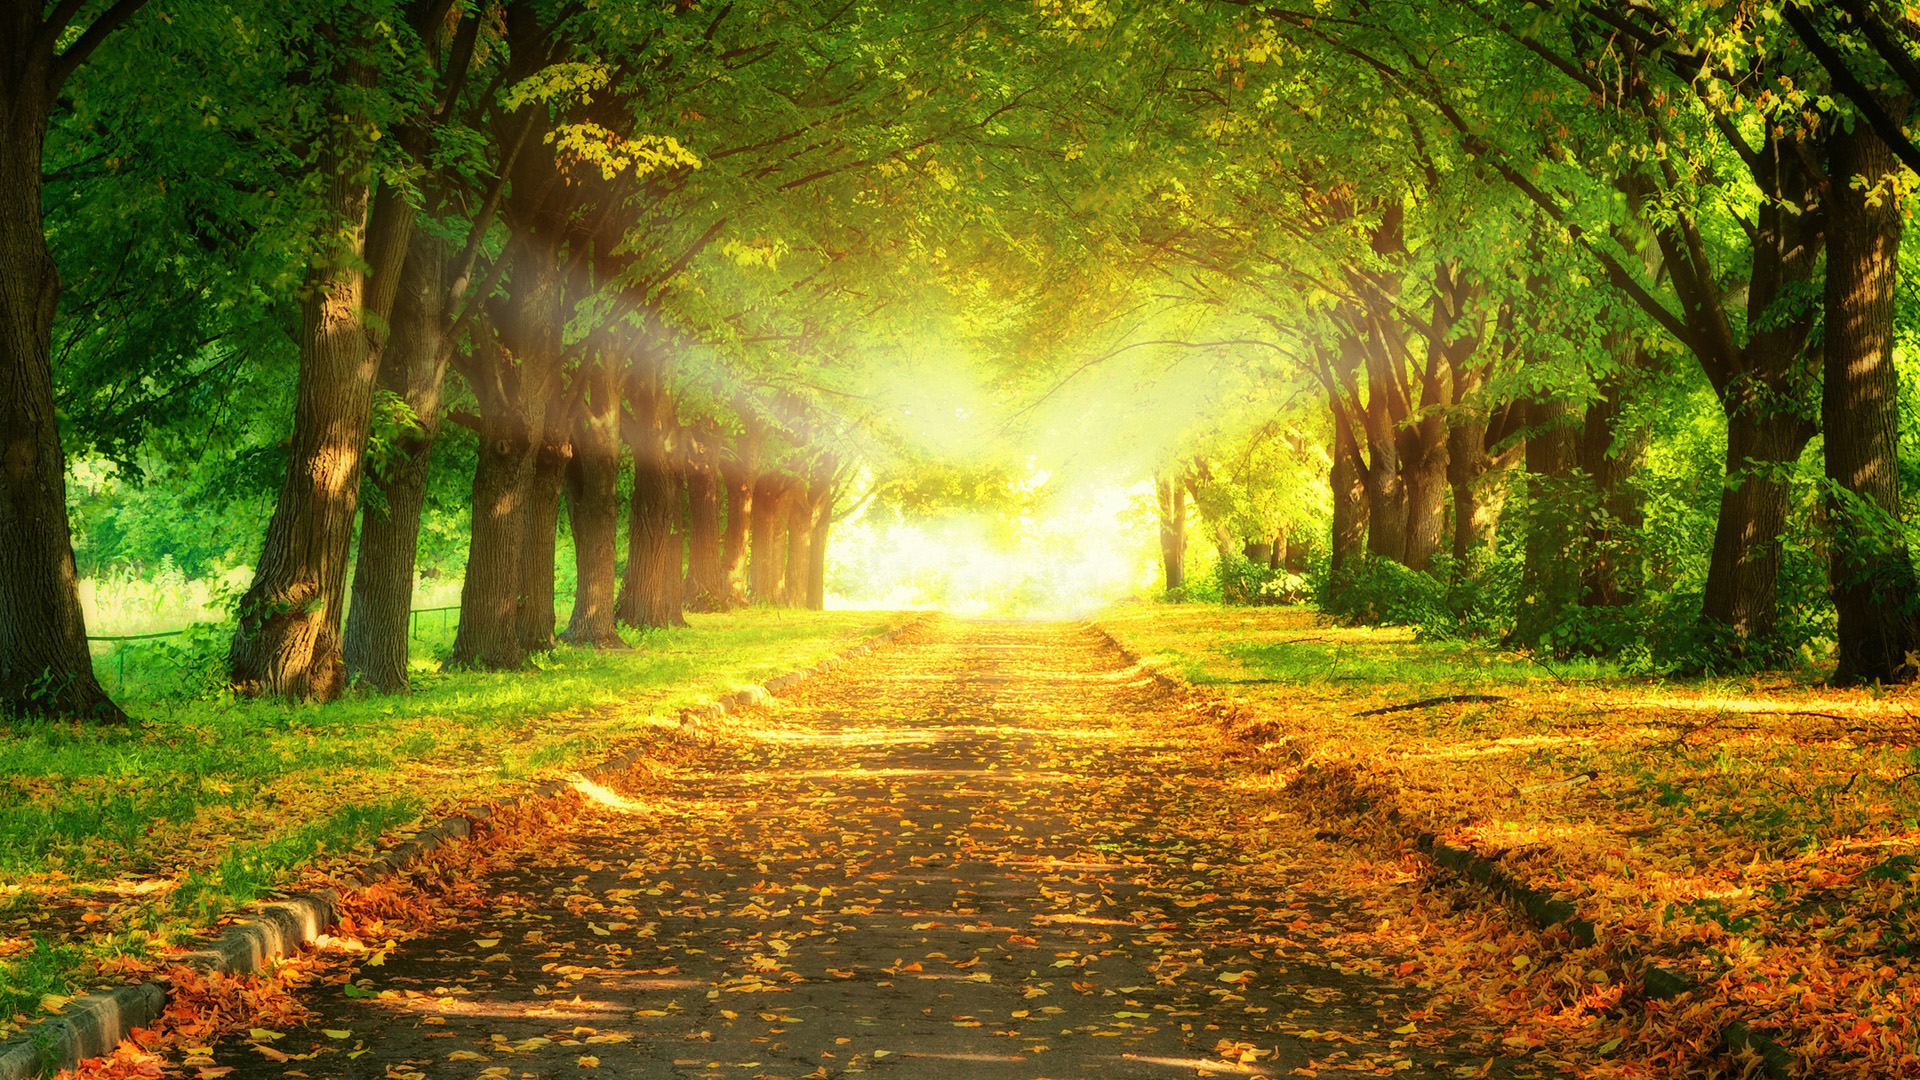 自然公园路,树林,阳光,落叶,美丽的自然风景桌面壁纸